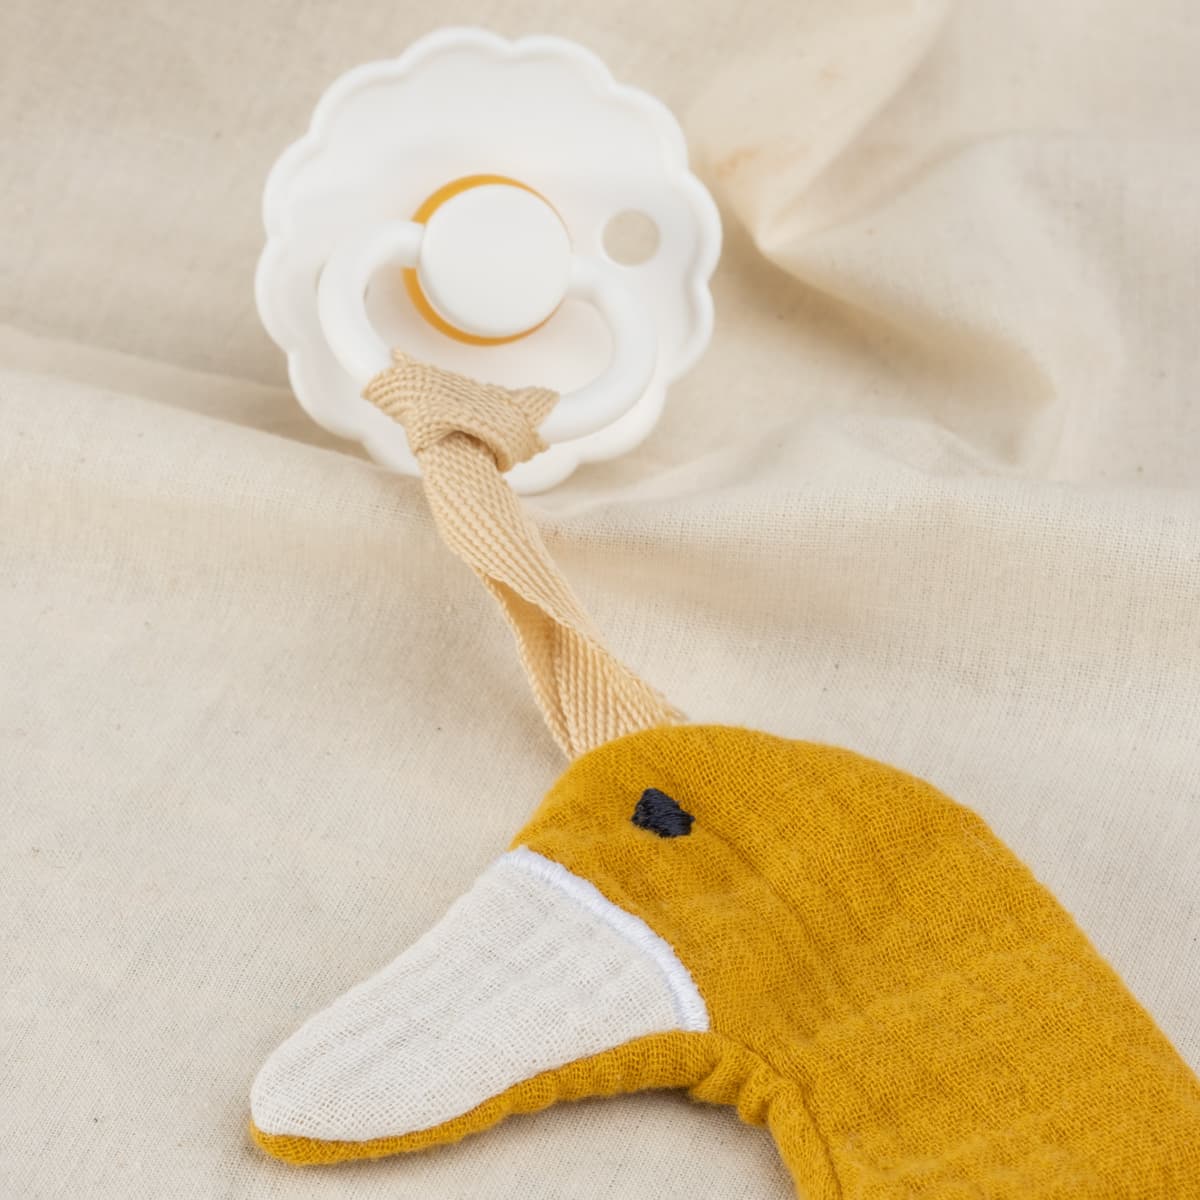 Nuckelkette aus Musselin, Anhänger für Nuckelkette personalisiert mit Wunschnamen, Motiven Ente und Reh. Für Babys, Jungs, Mädchen. (Senfgelb Ente)